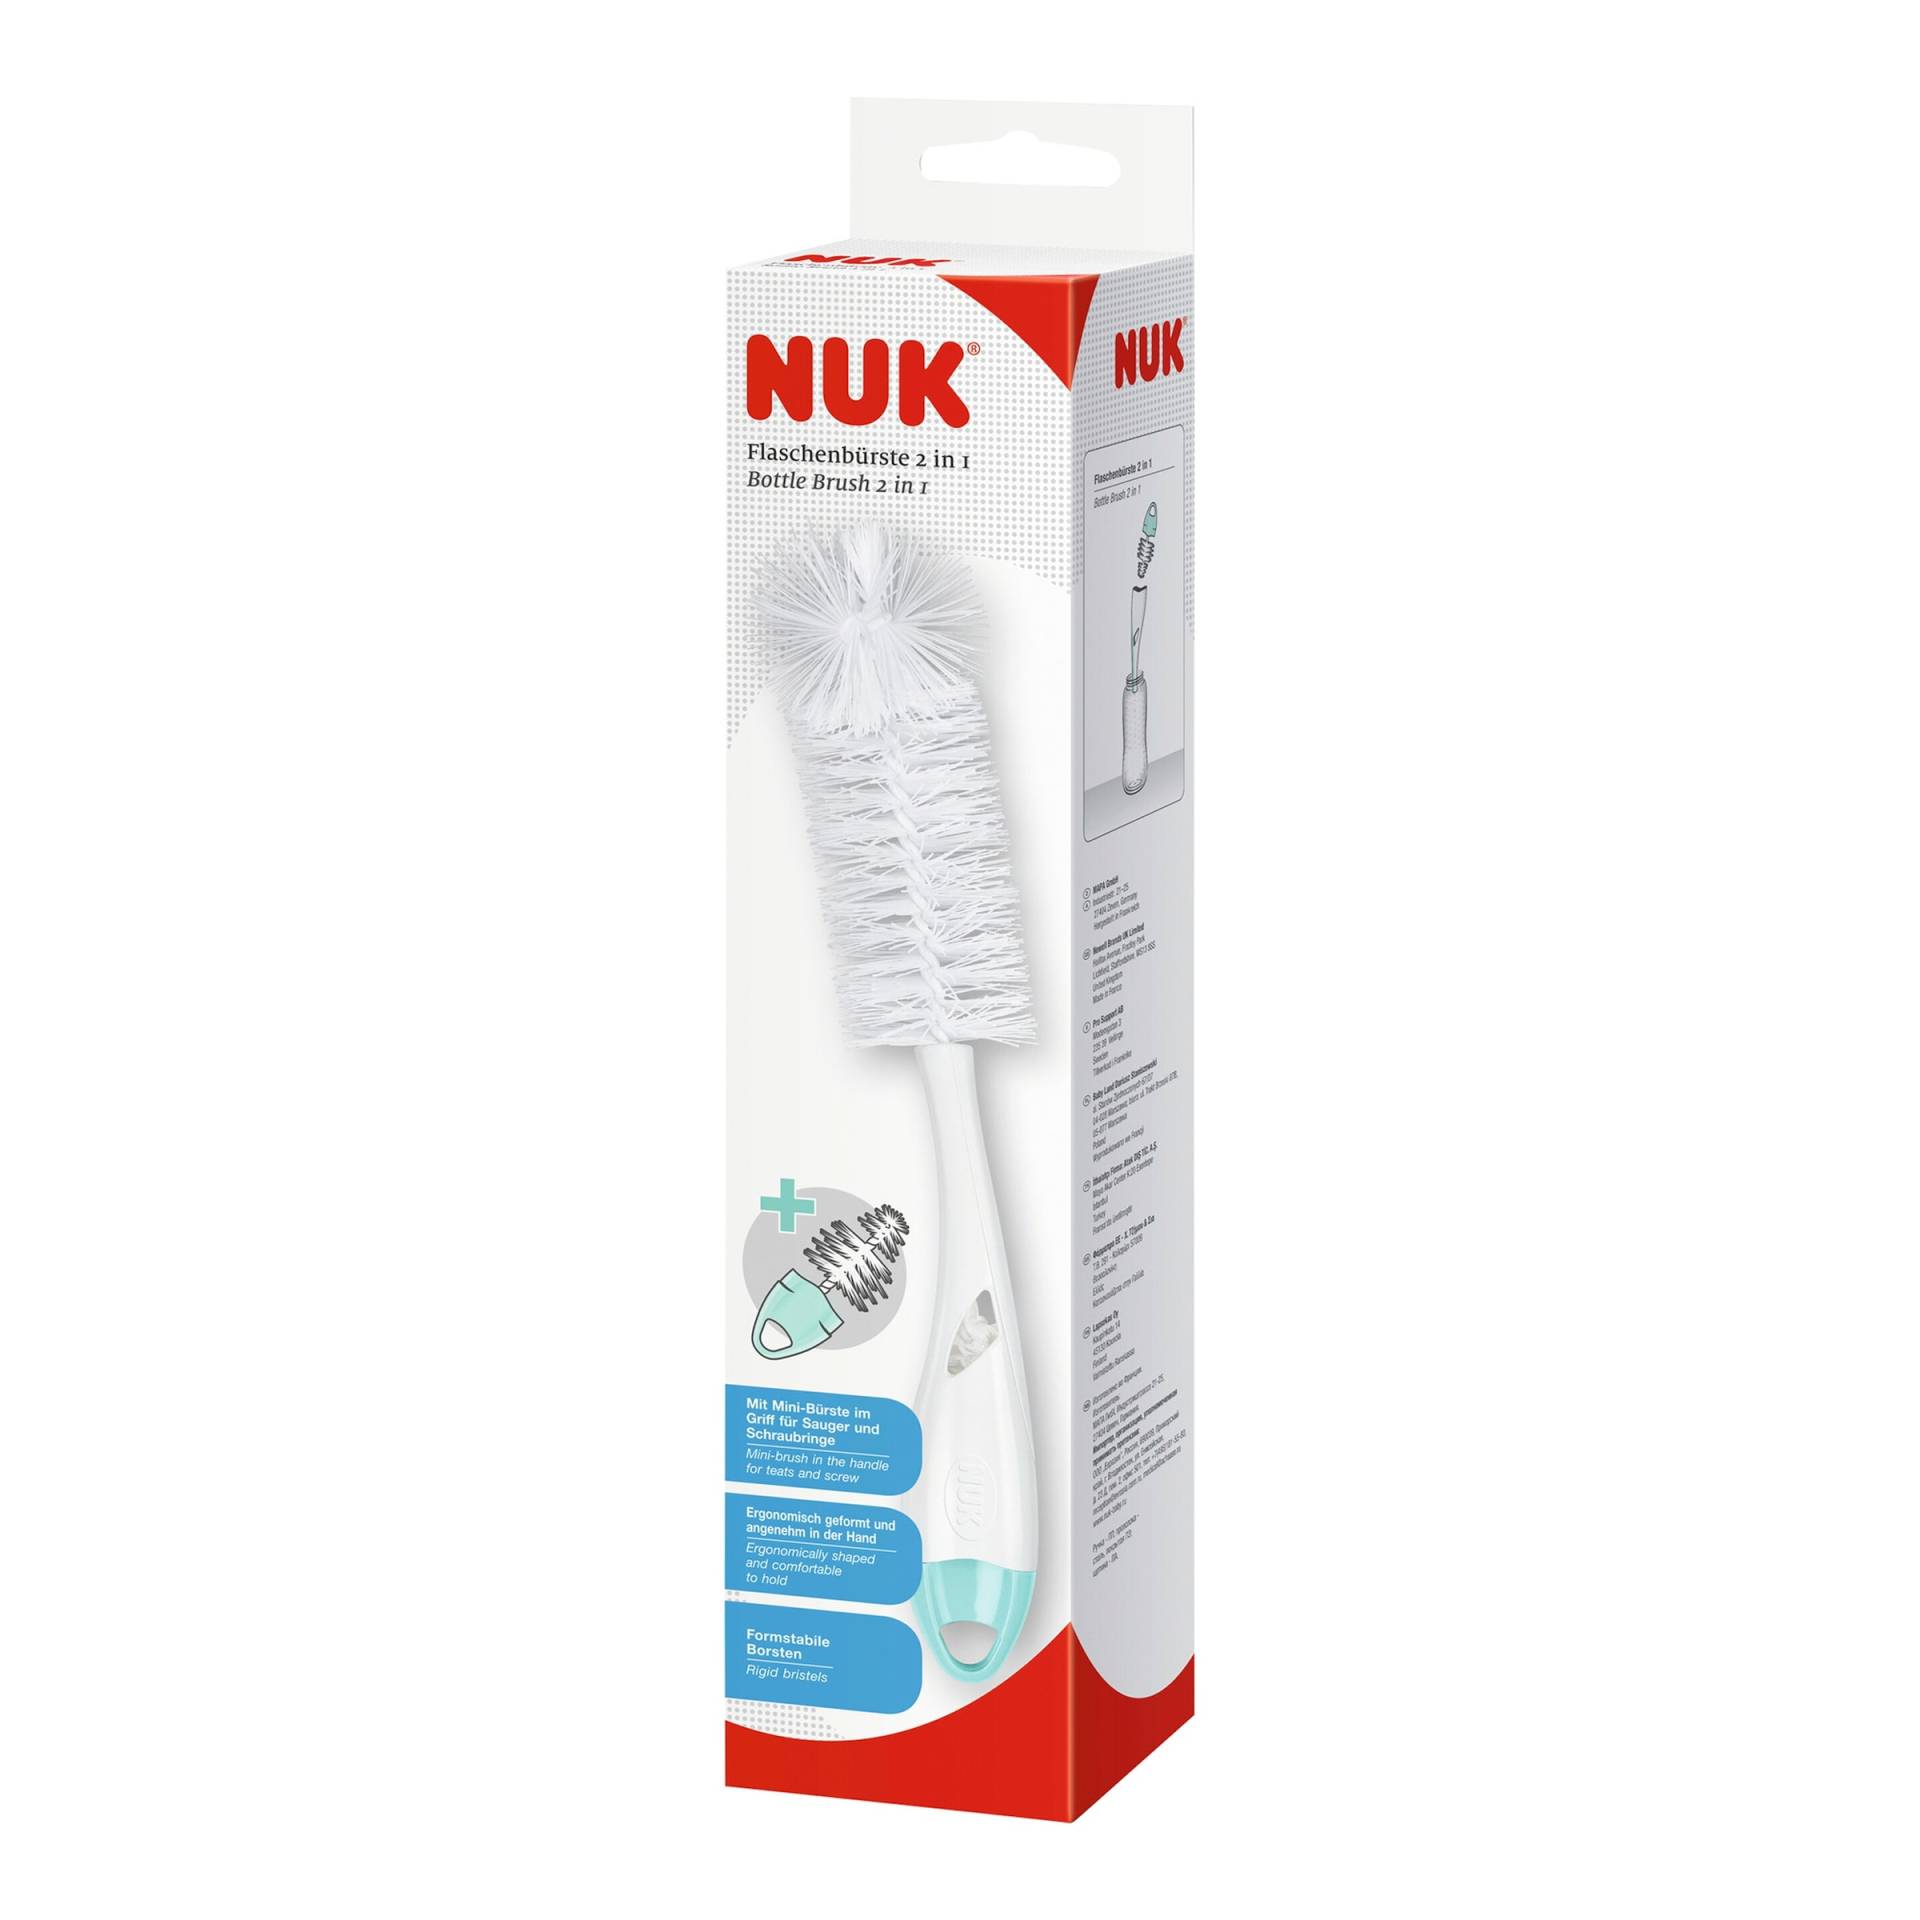 Nuk 2-in-1 Flaschenbürste von NUK